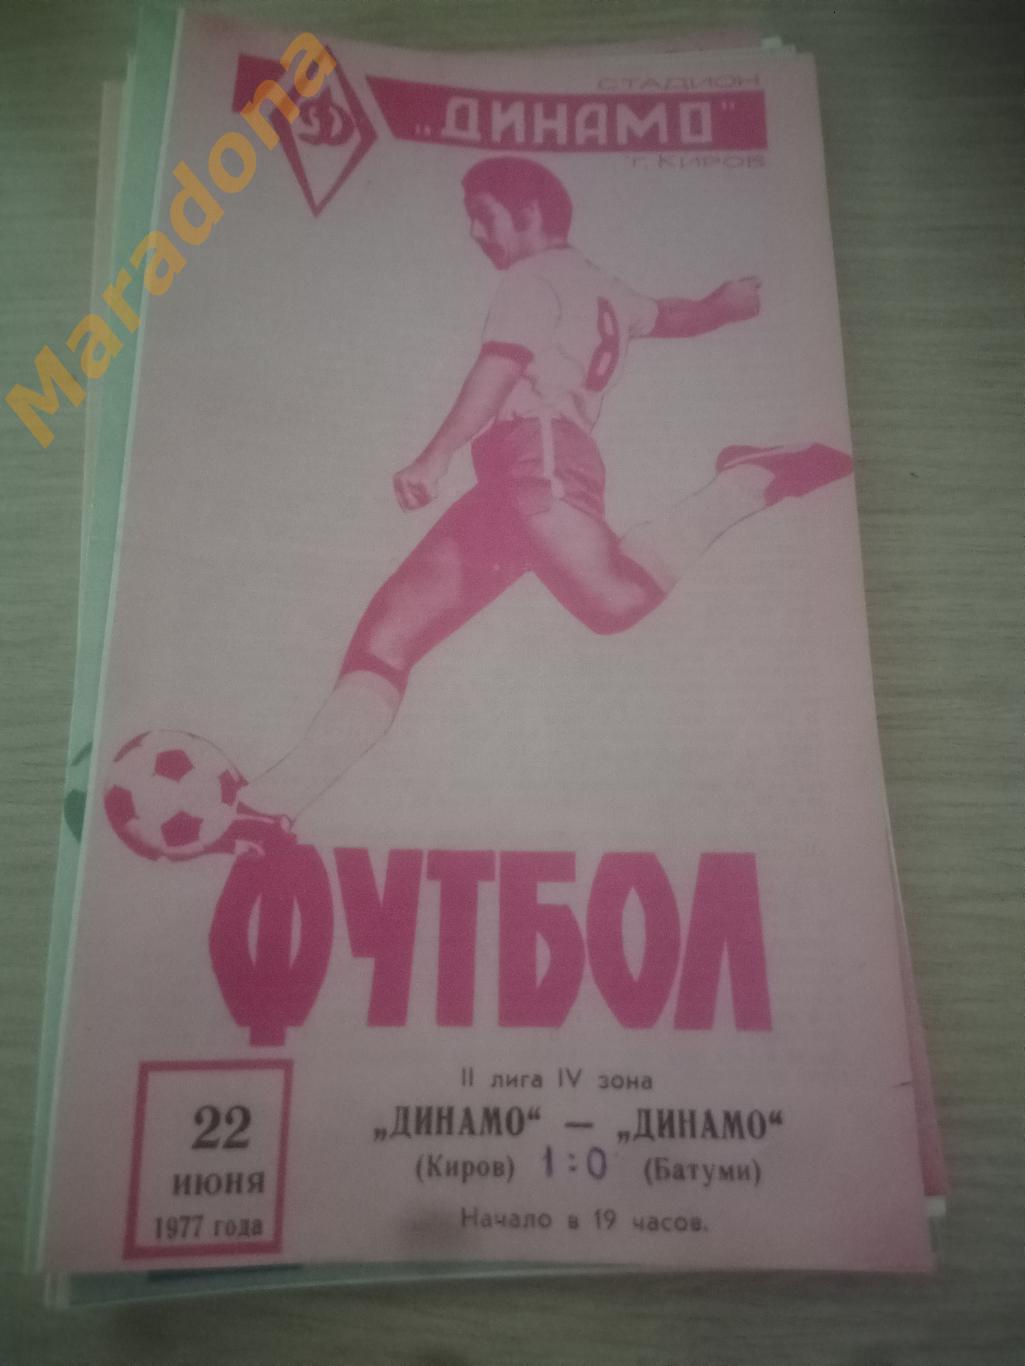 Динамо Киров - Динамо Батуми 1977